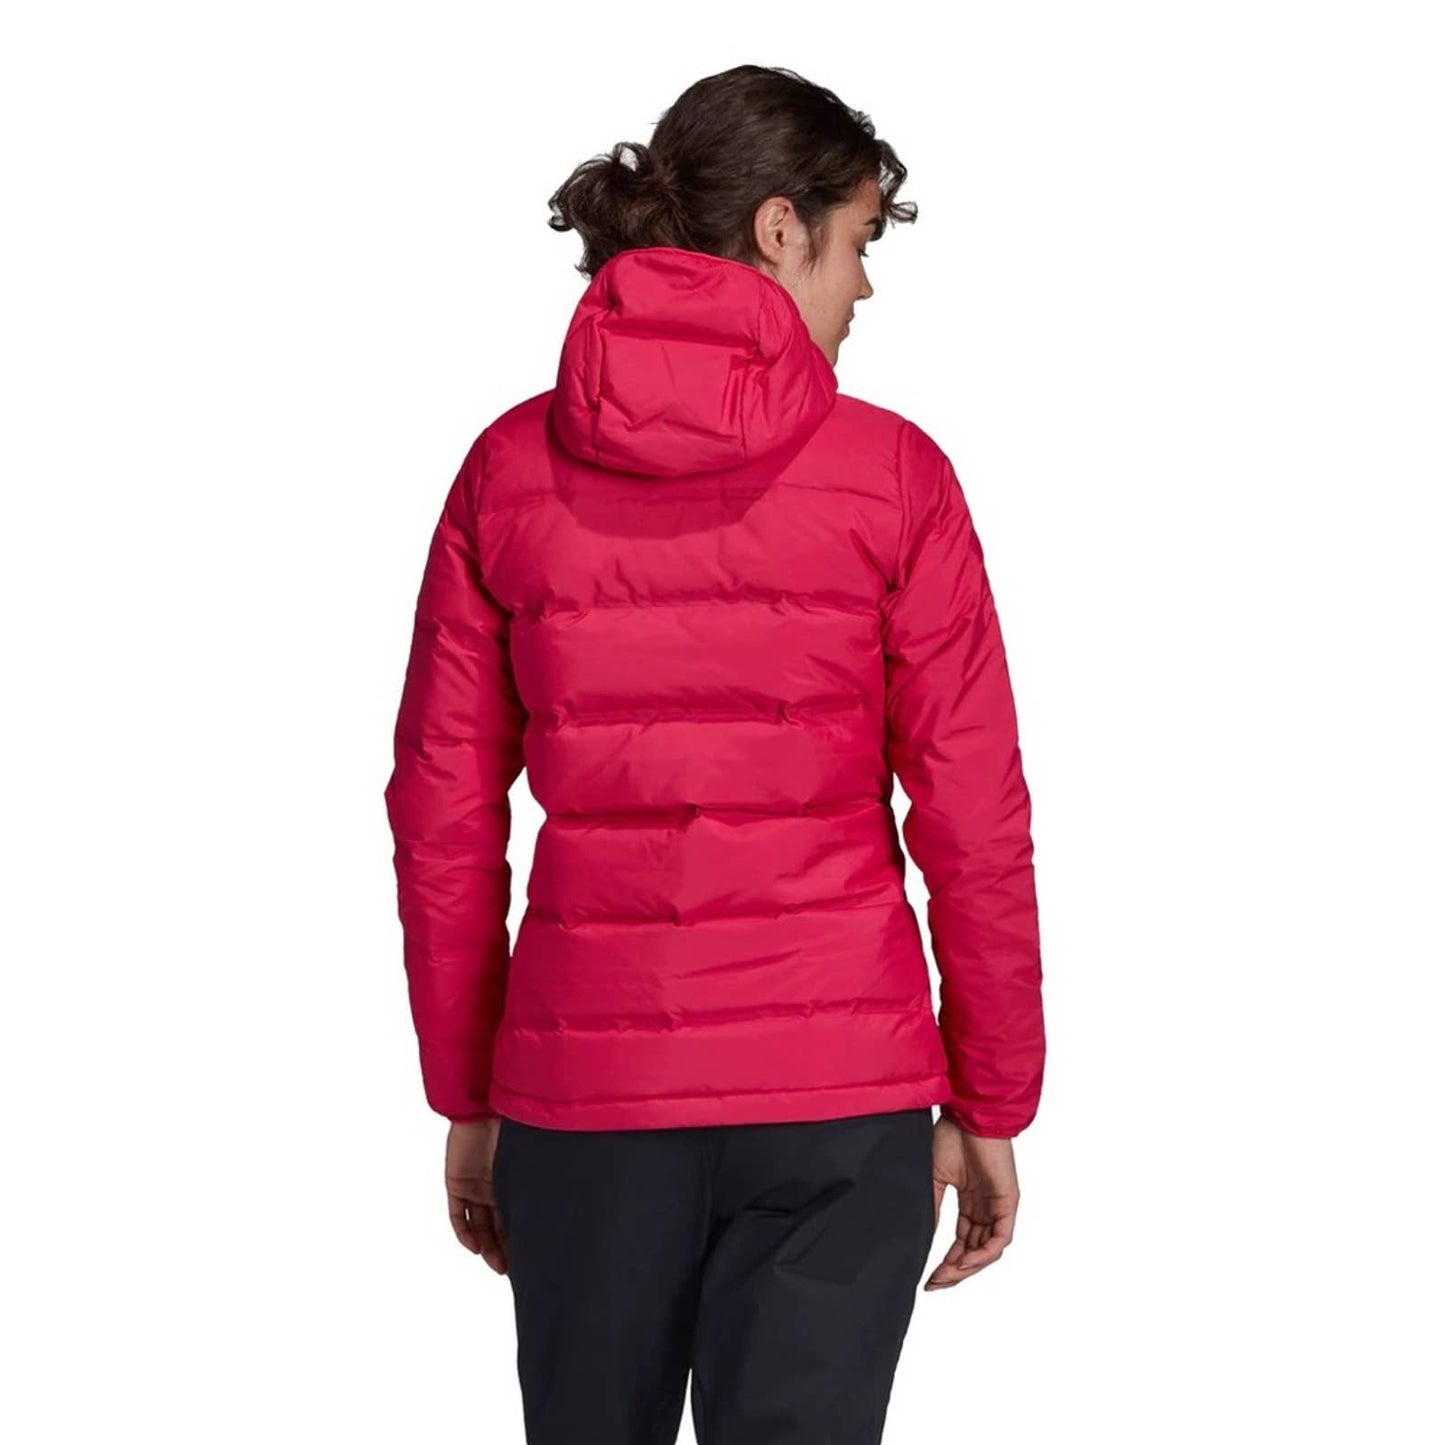 Adidas Hot Pink “Helionic” Puffer Jacket, Hooded, Size Medium, NWT!!